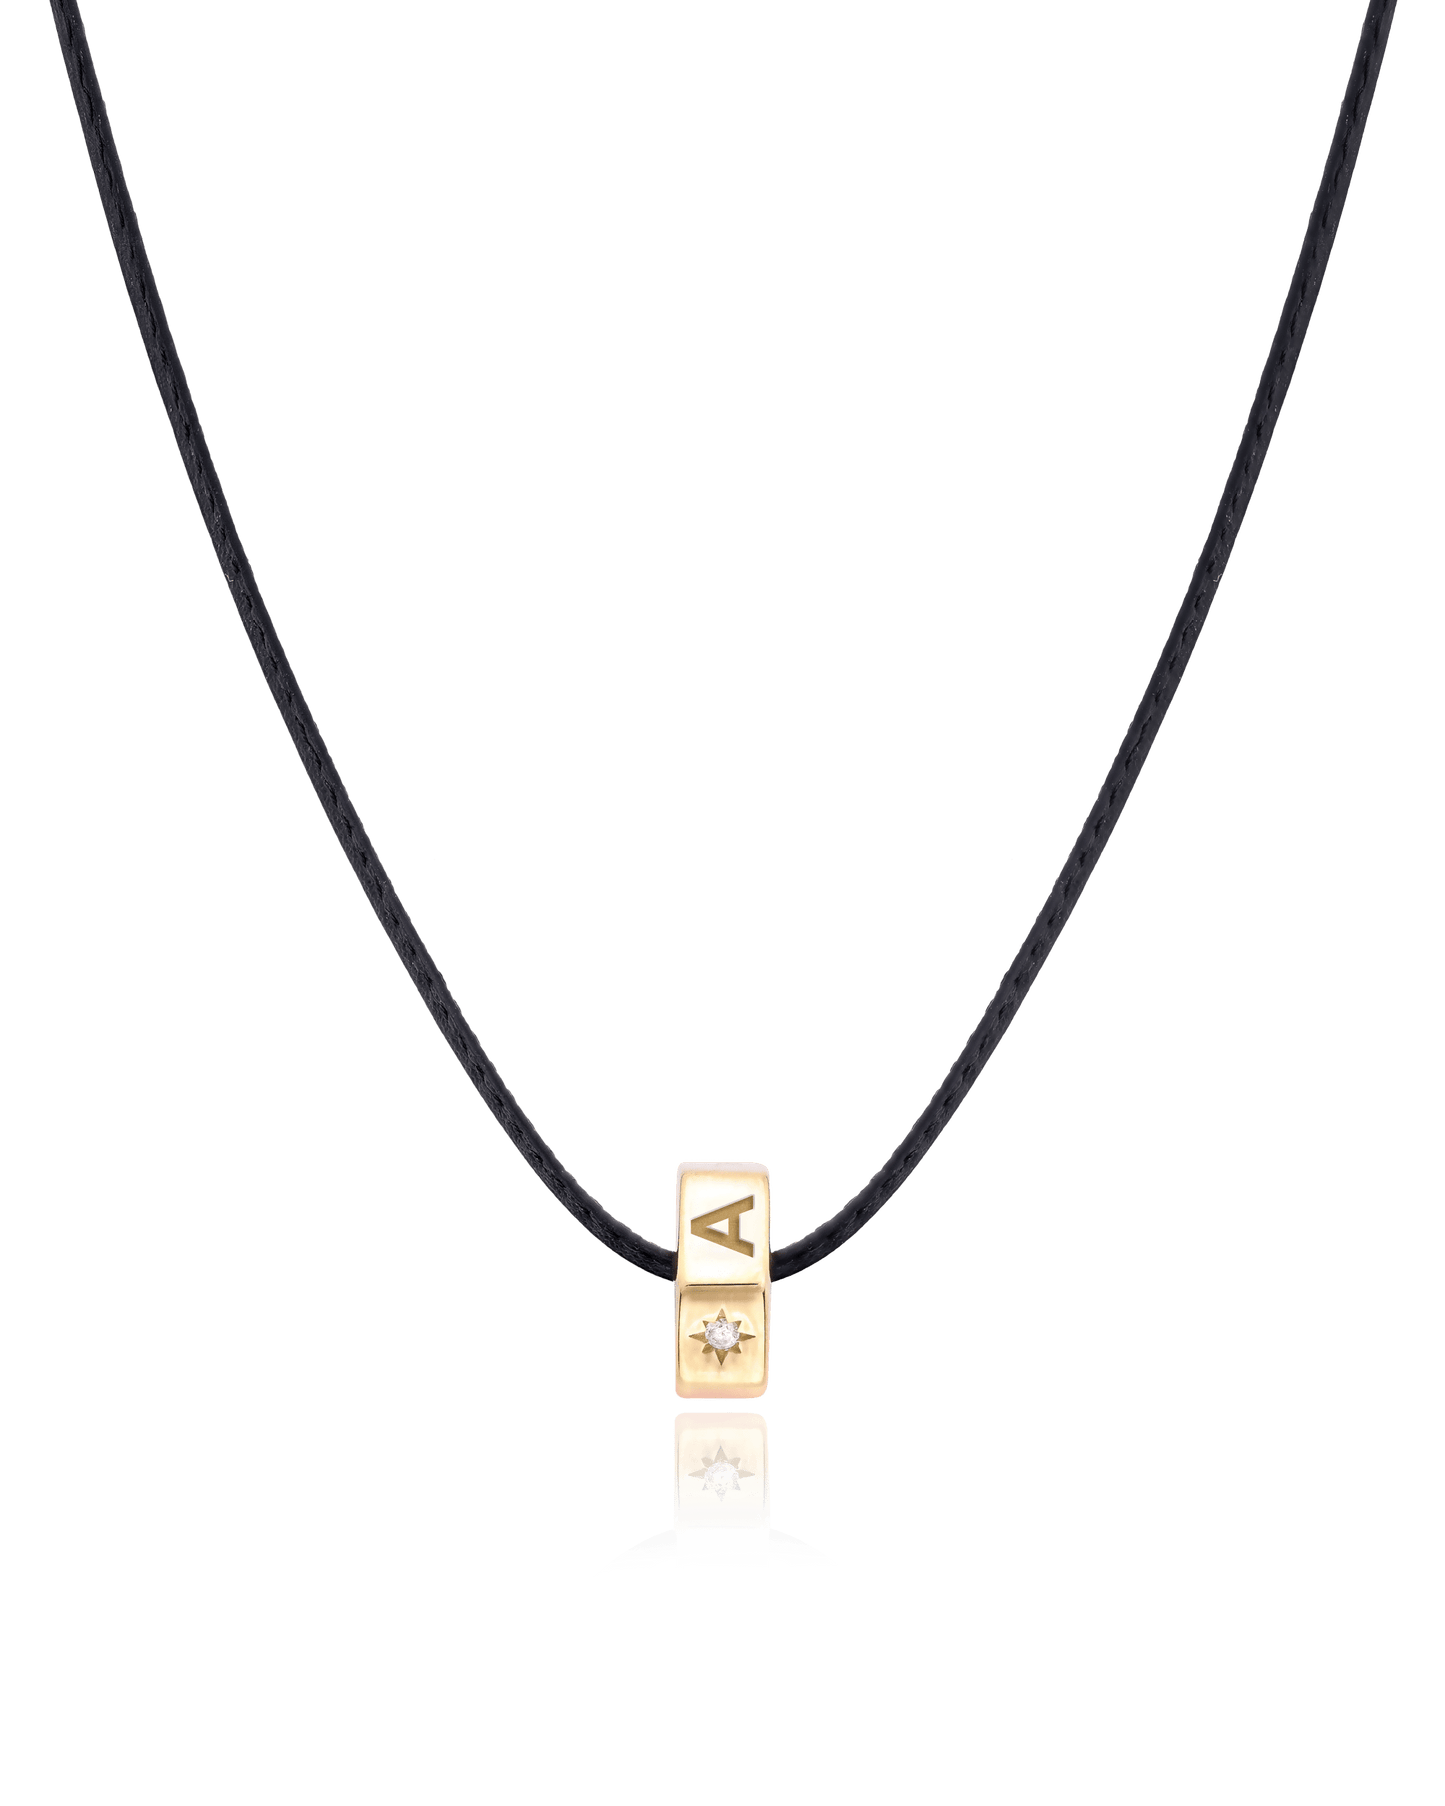 Hexagon Charm Necklace - 18K Gold Vermeil Necklaces magal-dev 